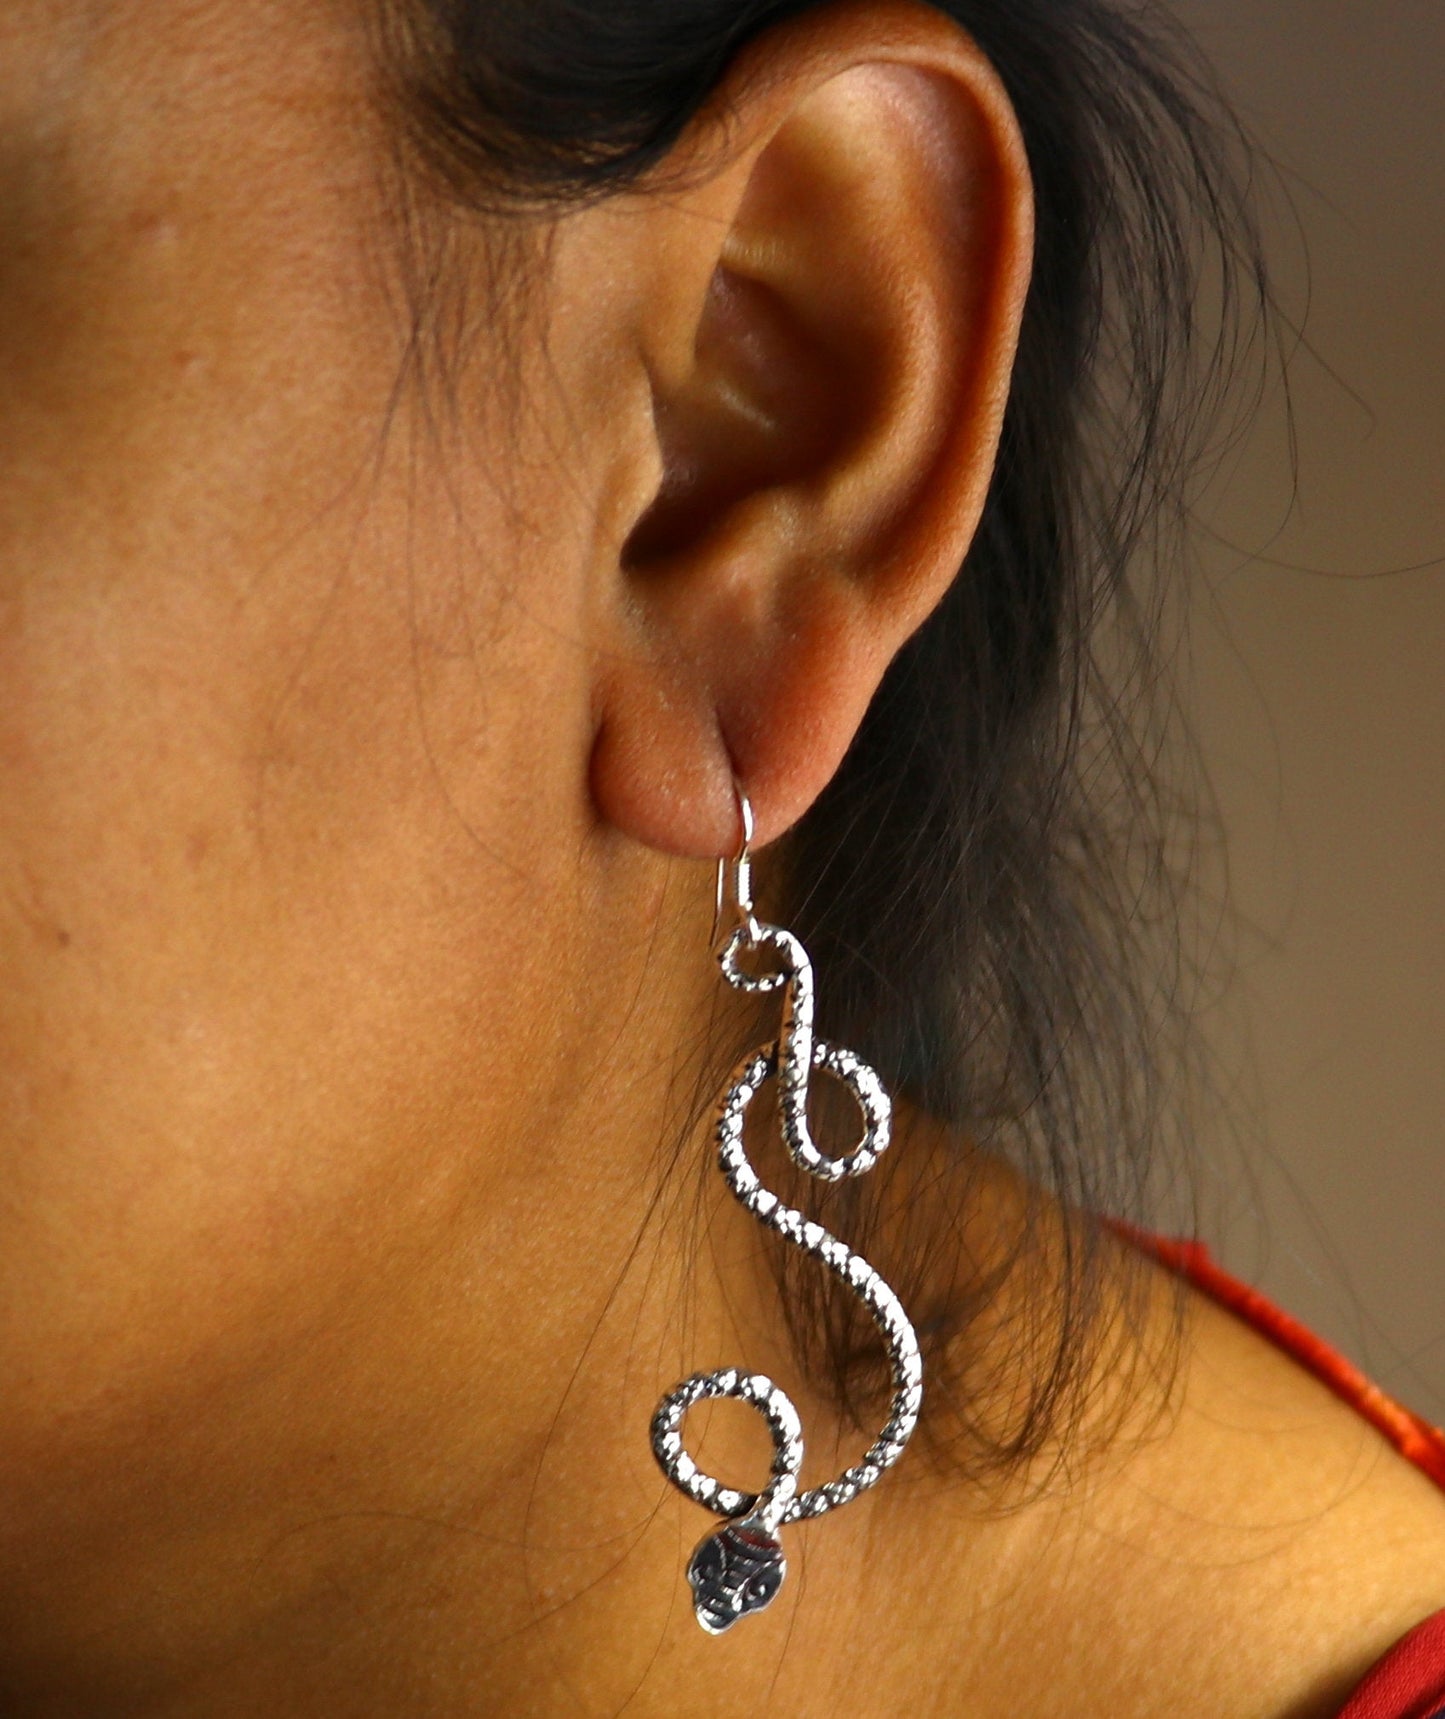 925 fine sterling silver customized vintage style snake design hoops earring, beautiful brides wedding earrings drop dangle jewelry ear601 - TRIBAL ORNAMENTS